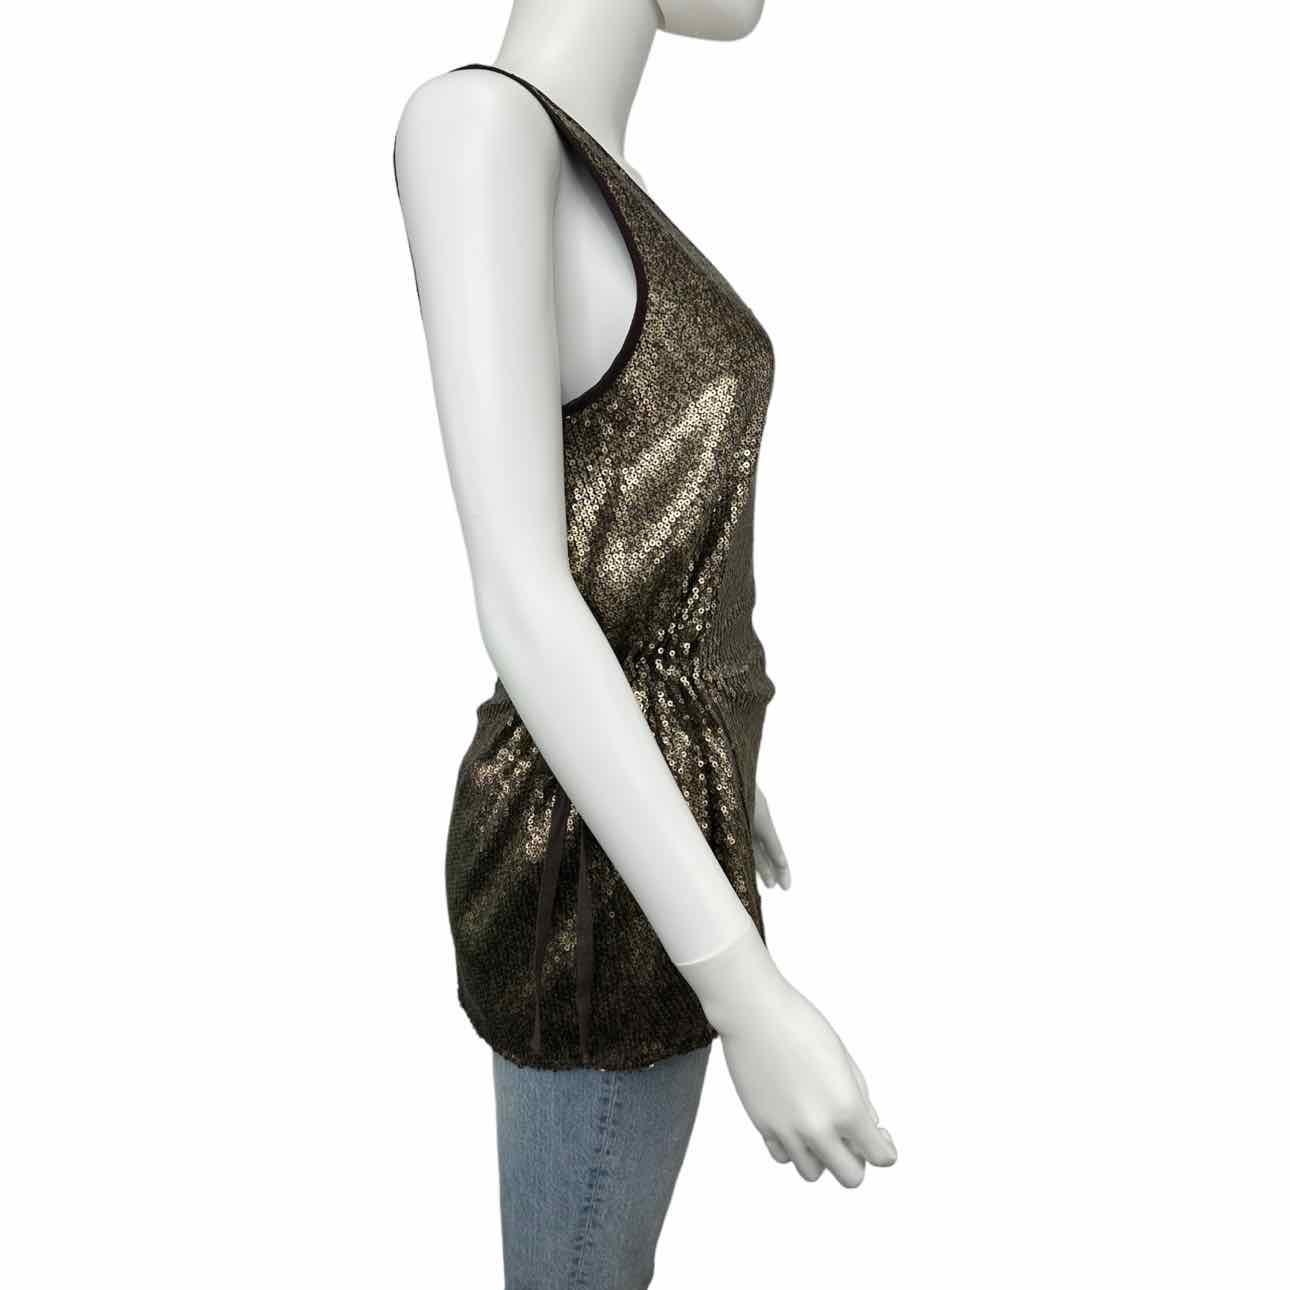 2Brych NWT Metallic Bronze Sequin Top, sleeveless sequin top